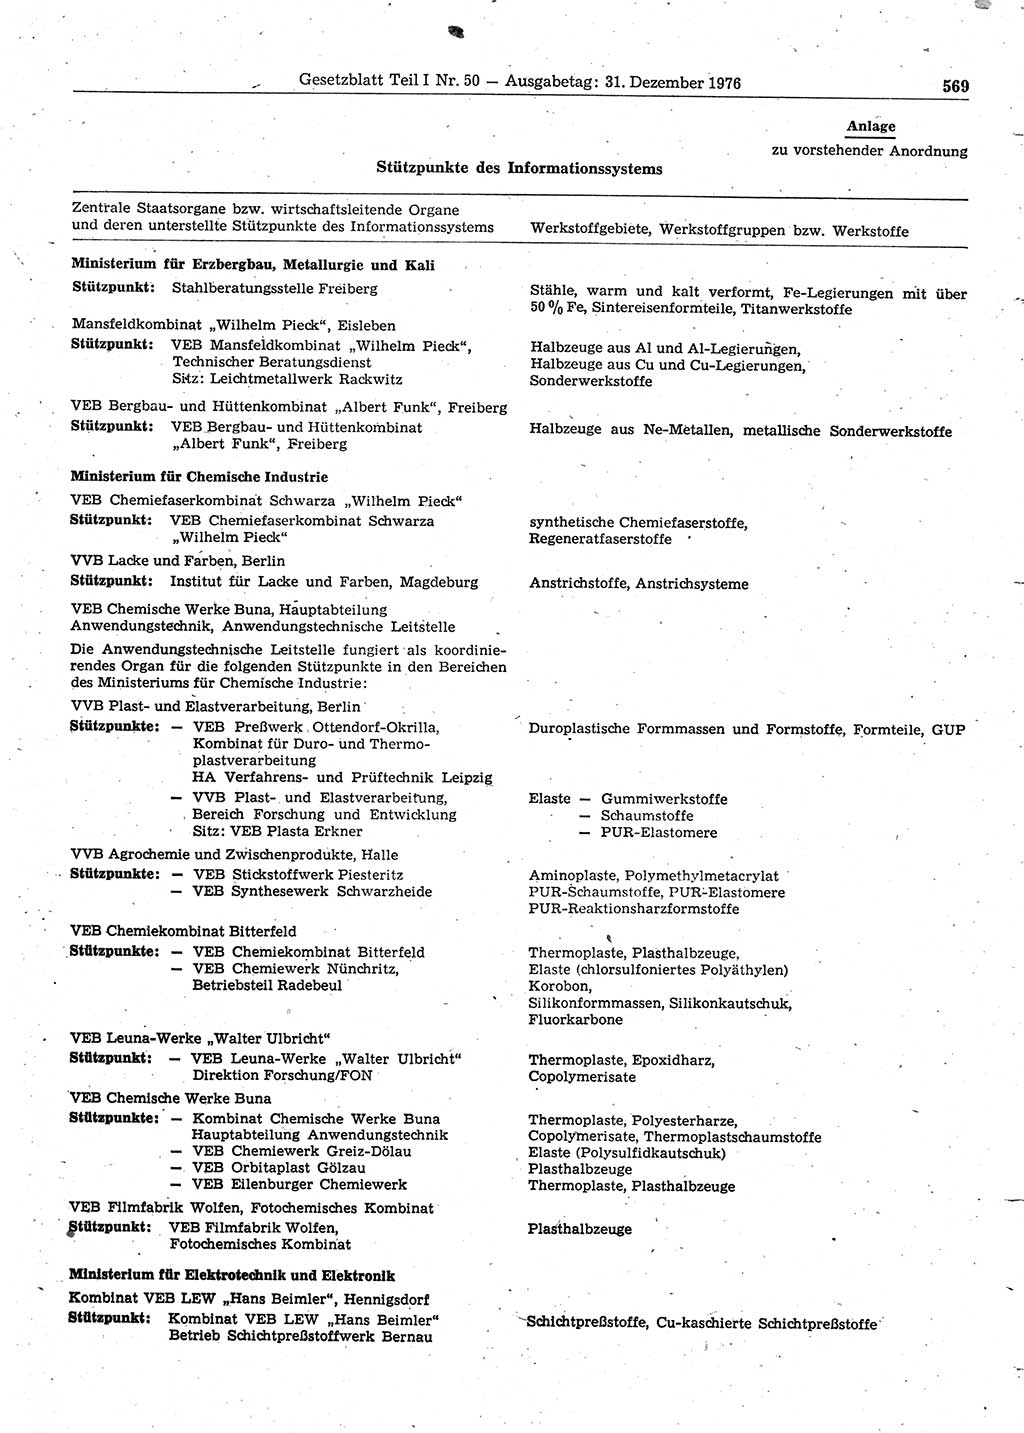 Gesetzblatt (GBl.) der Deutschen Demokratischen Republik (DDR) Teil Ⅰ 1976, Seite 569 (GBl. DDR Ⅰ 1976, S. 569)